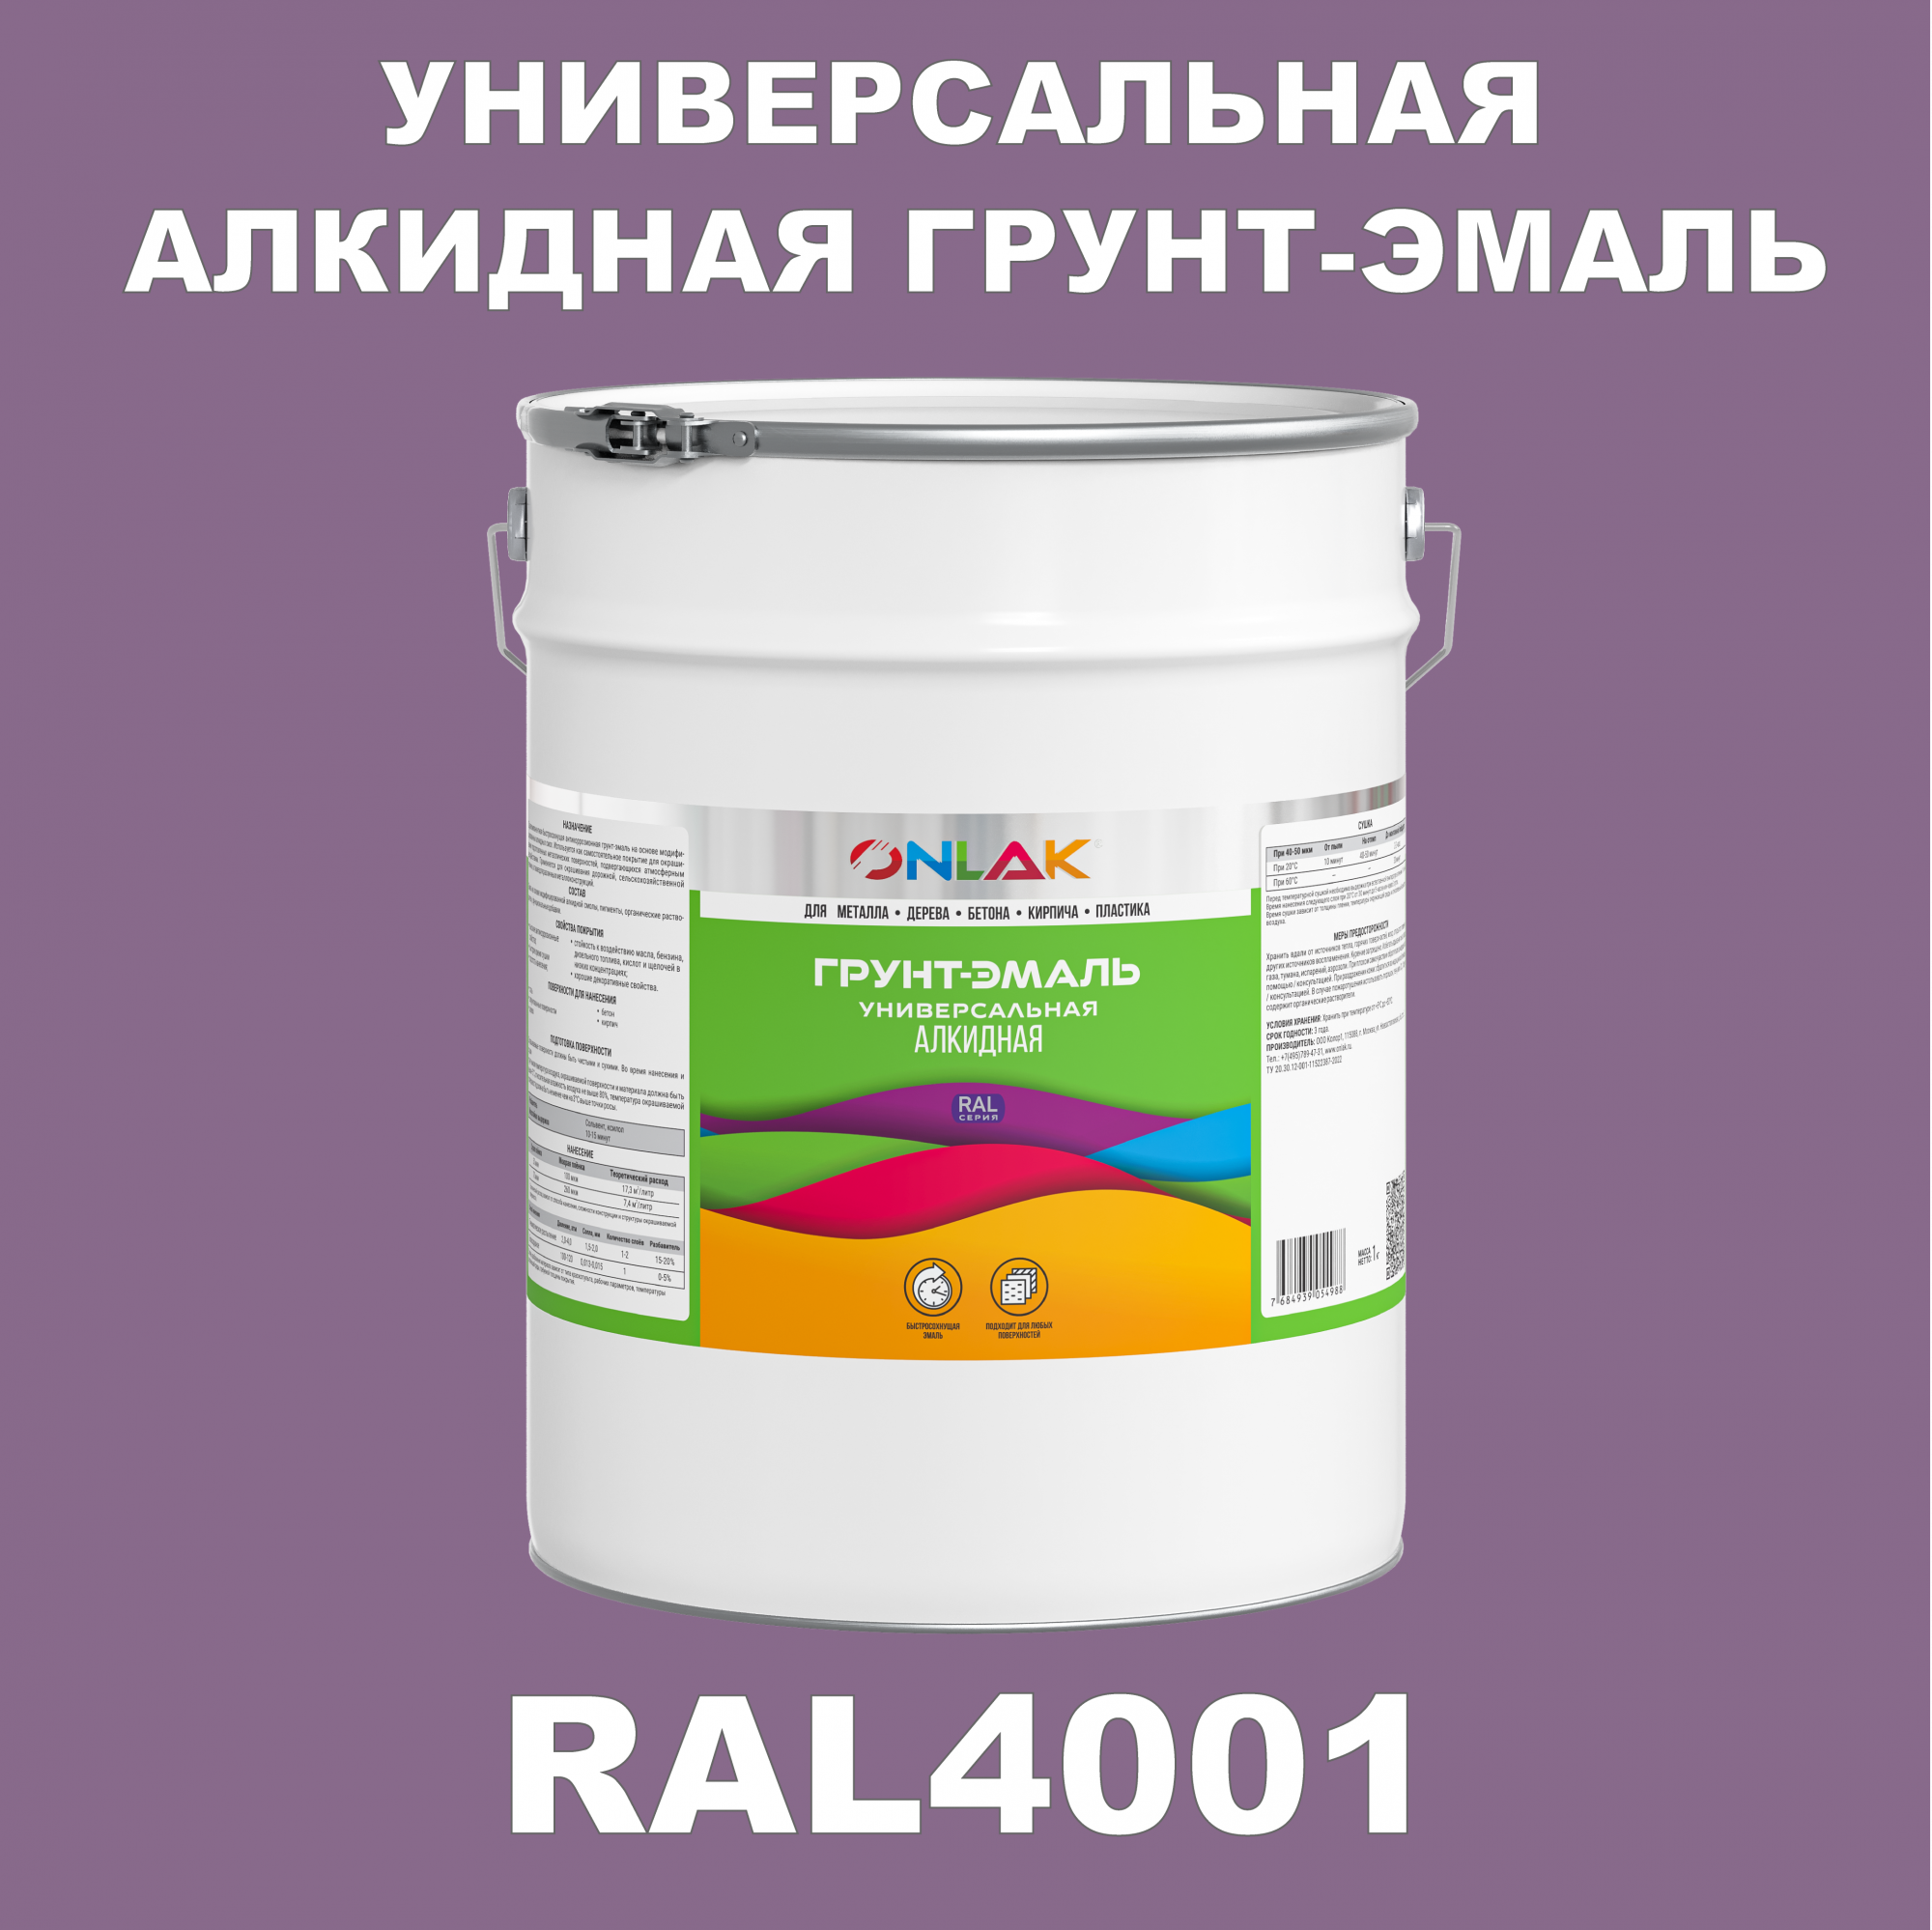 Грунт-эмаль ONLAK 1К RAL4001 антикоррозионная алкидная по металлу по ржавчине 20 кг антикоррозионная грунт эмаль onlak ral 4007 фиолетовый 572 мл